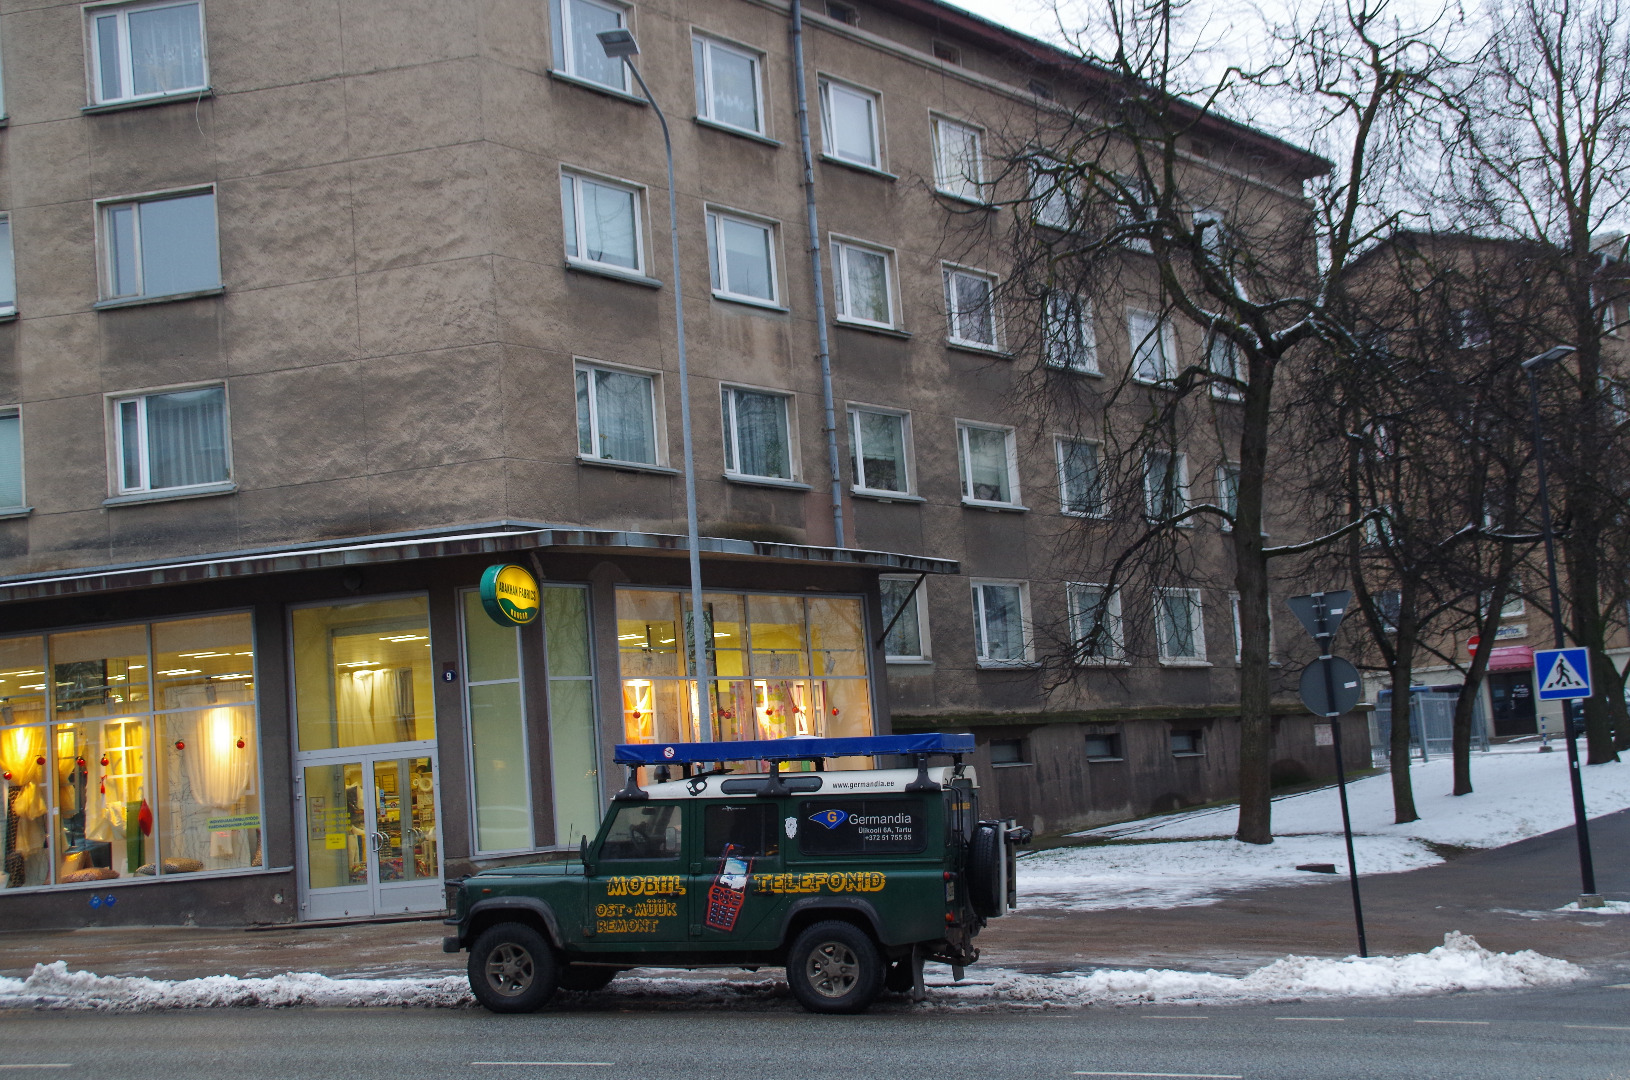 House Riga and Star Tn. Corner, no. 43, 13, 15, "Kommerts". Tartu rephoto